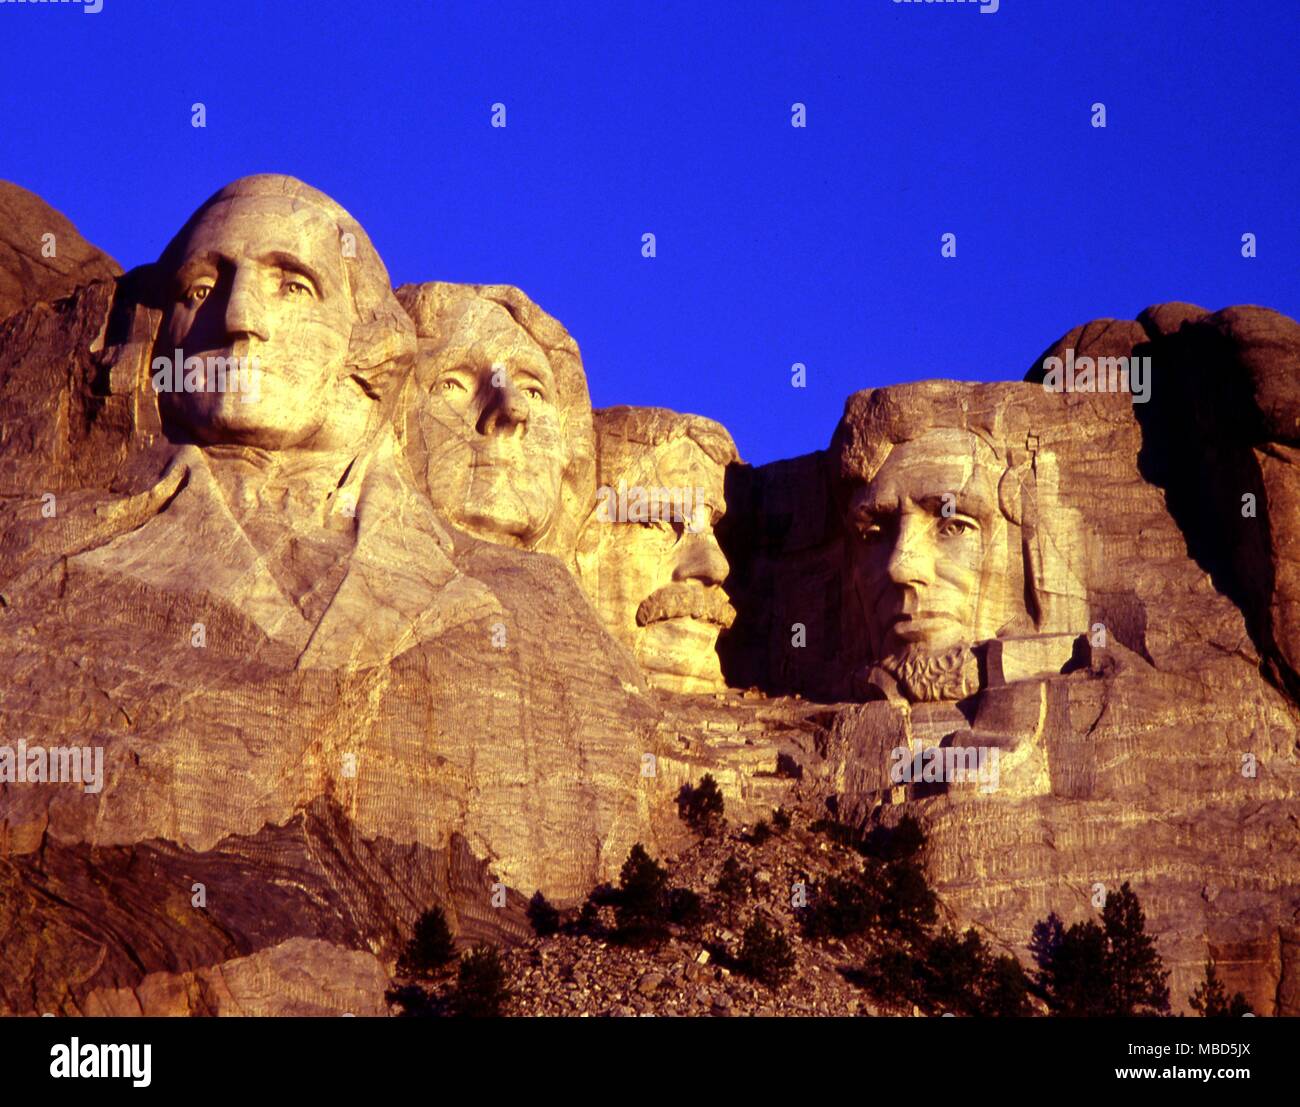 USA - Dakota du Sud - Mount Rushmore - entre 1927 et le 31 octobre 1941,  Gutzon Borglum et 400 ouvriers sculpté le 60 pieds (18 m) de bustes  colossaux des présidents (